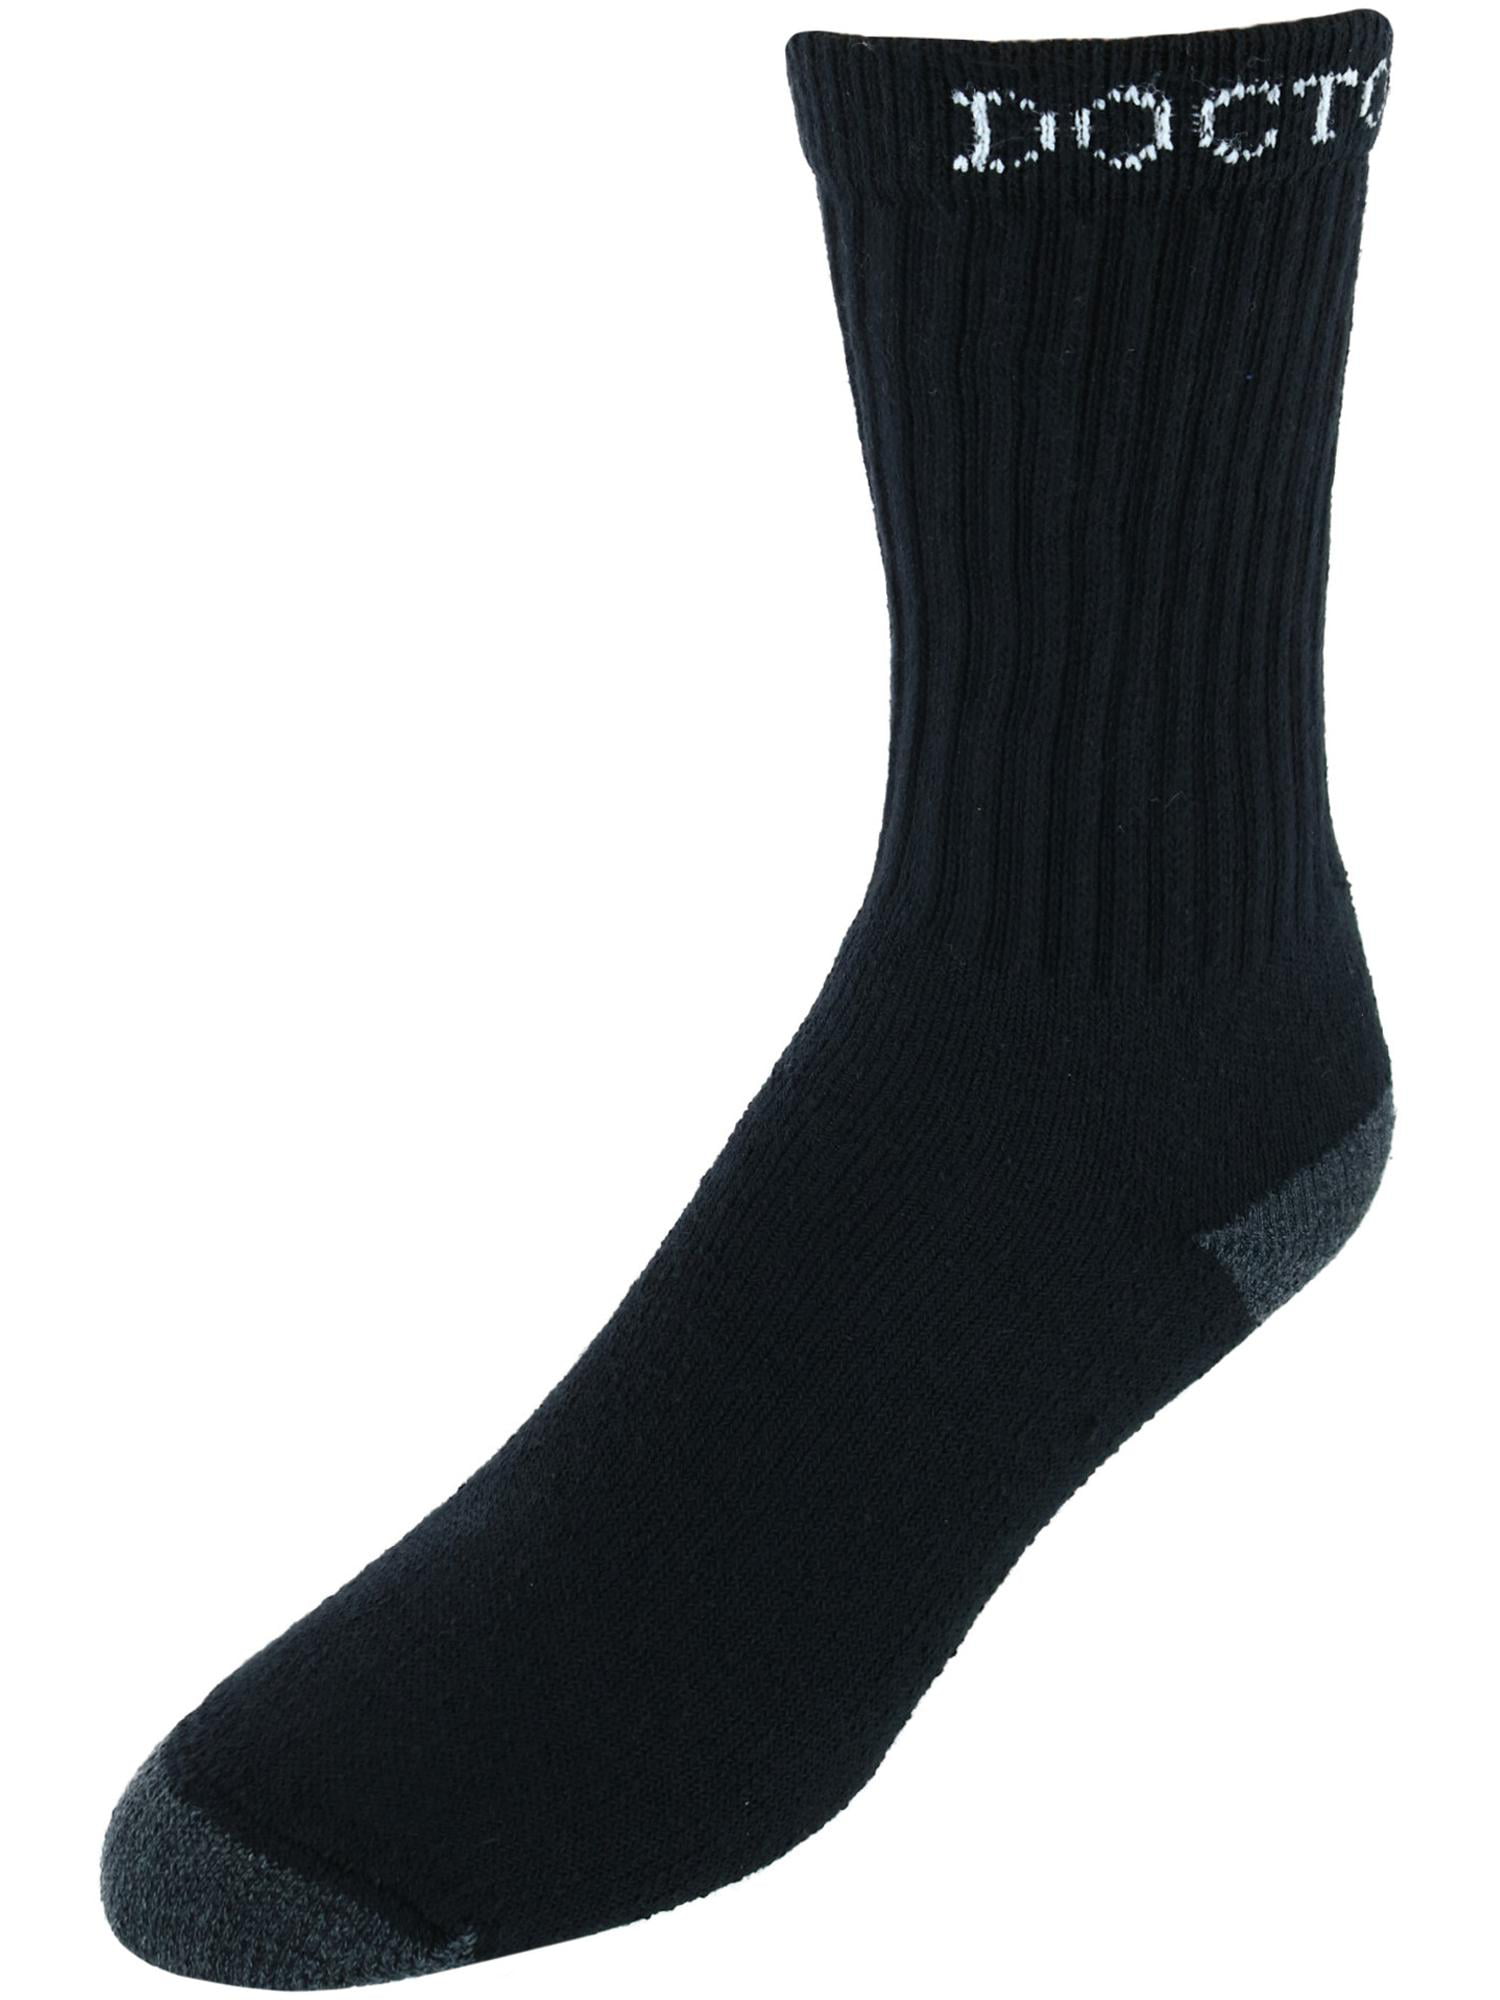 3 Pair Pack Men Calf Cotton Socks Comfort Grip Formal Casual Boot Size 9-12 